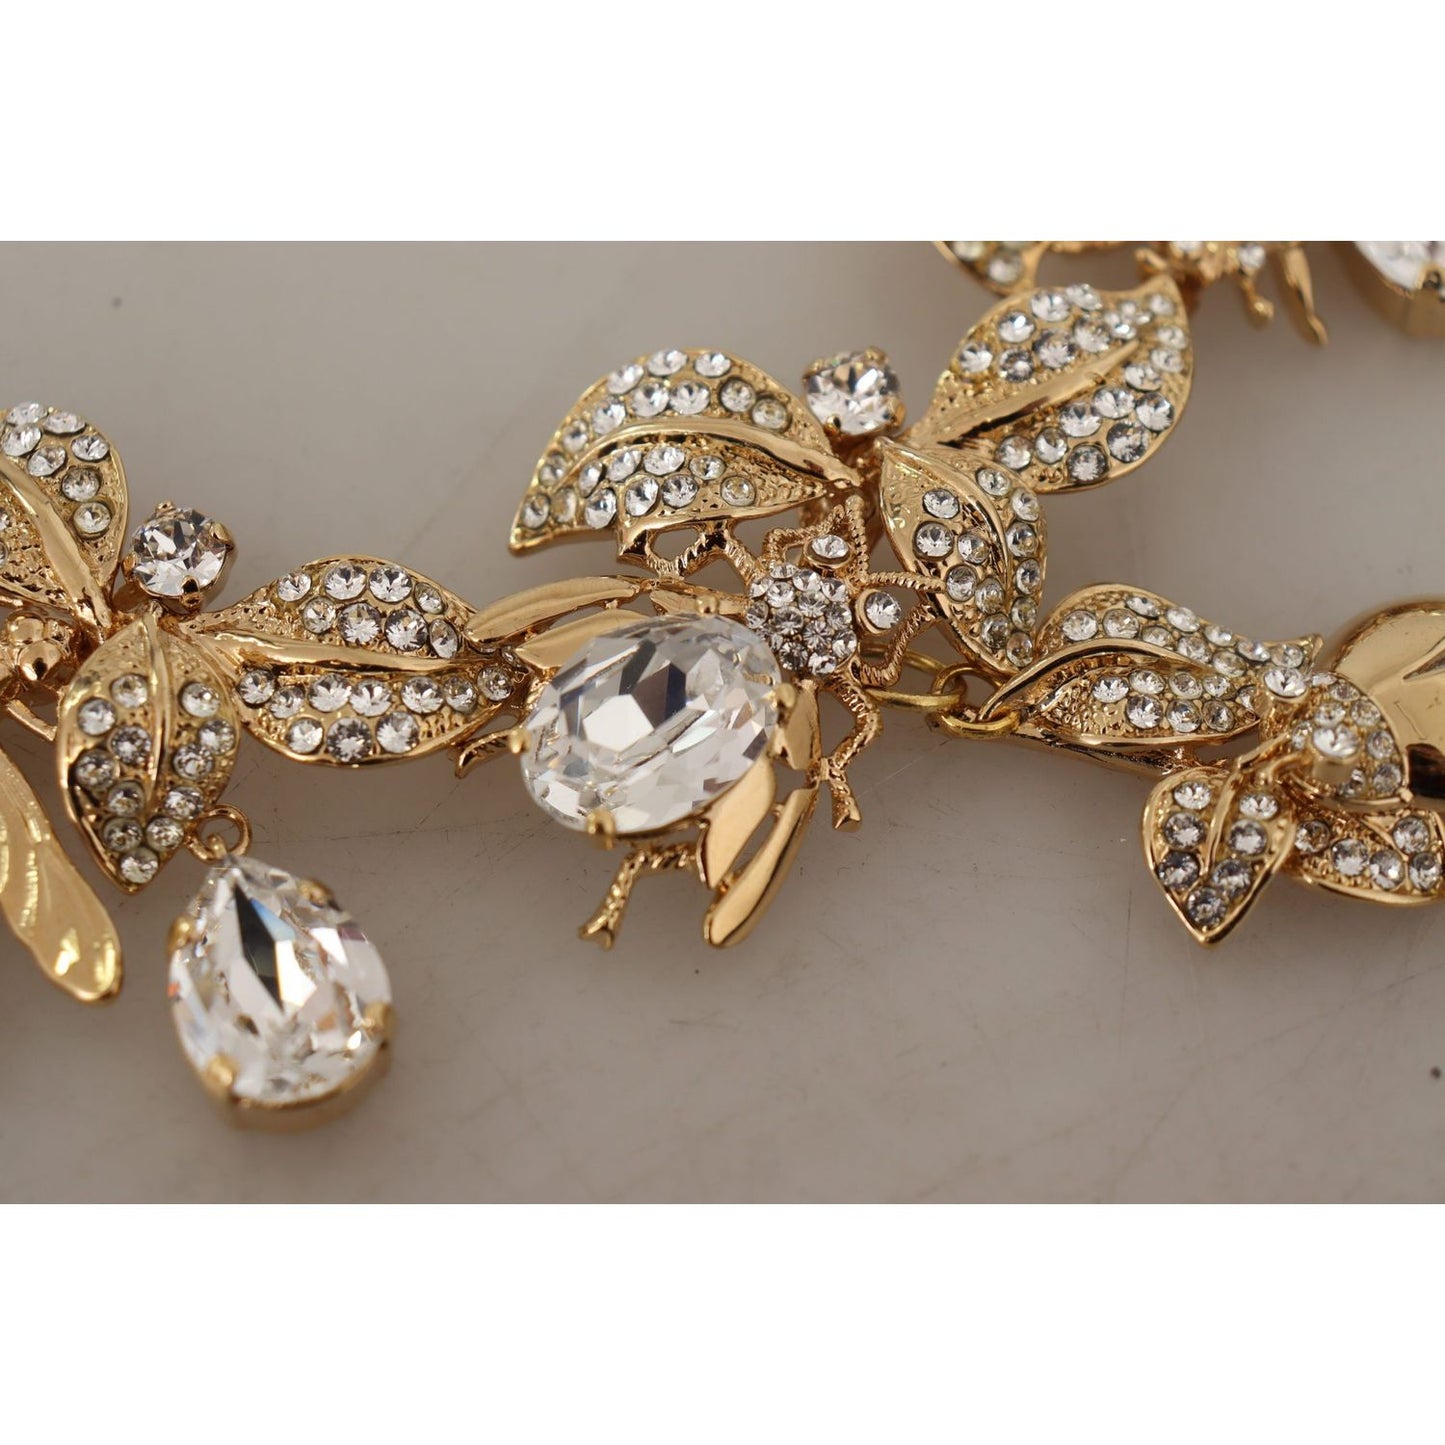 Dolce & Gabbana Elegant Sicily Floral Bug Statement Necklace gold-brass-floral-sicily-crystal-statement-necklace WOMAN NECKLACE IMG_1876-scaled-eb6e9f3d-340.jpg